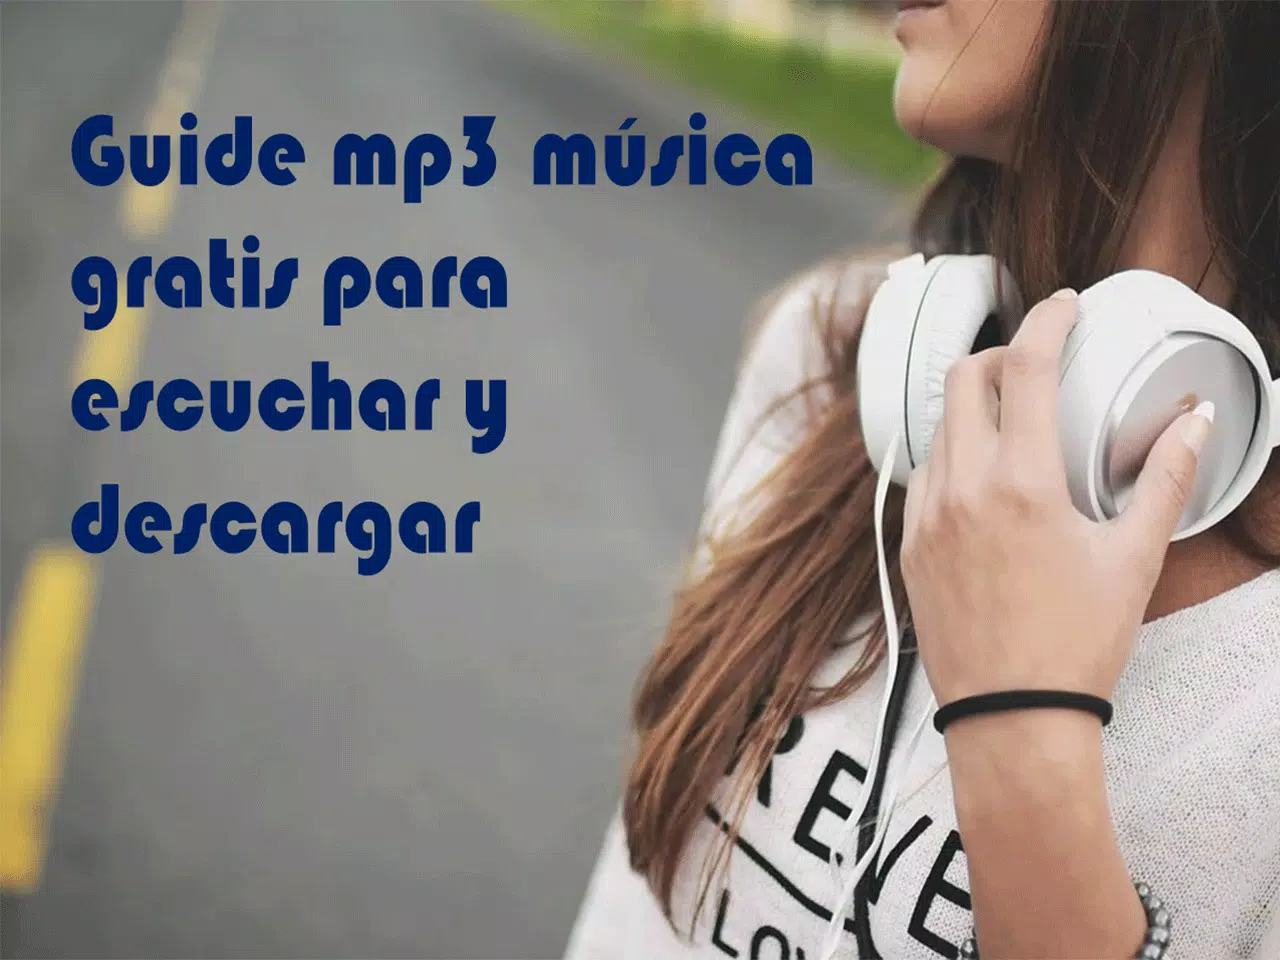 Descargar musica mp3 gratis rapido y seguro guia APK für Android  herunterladen